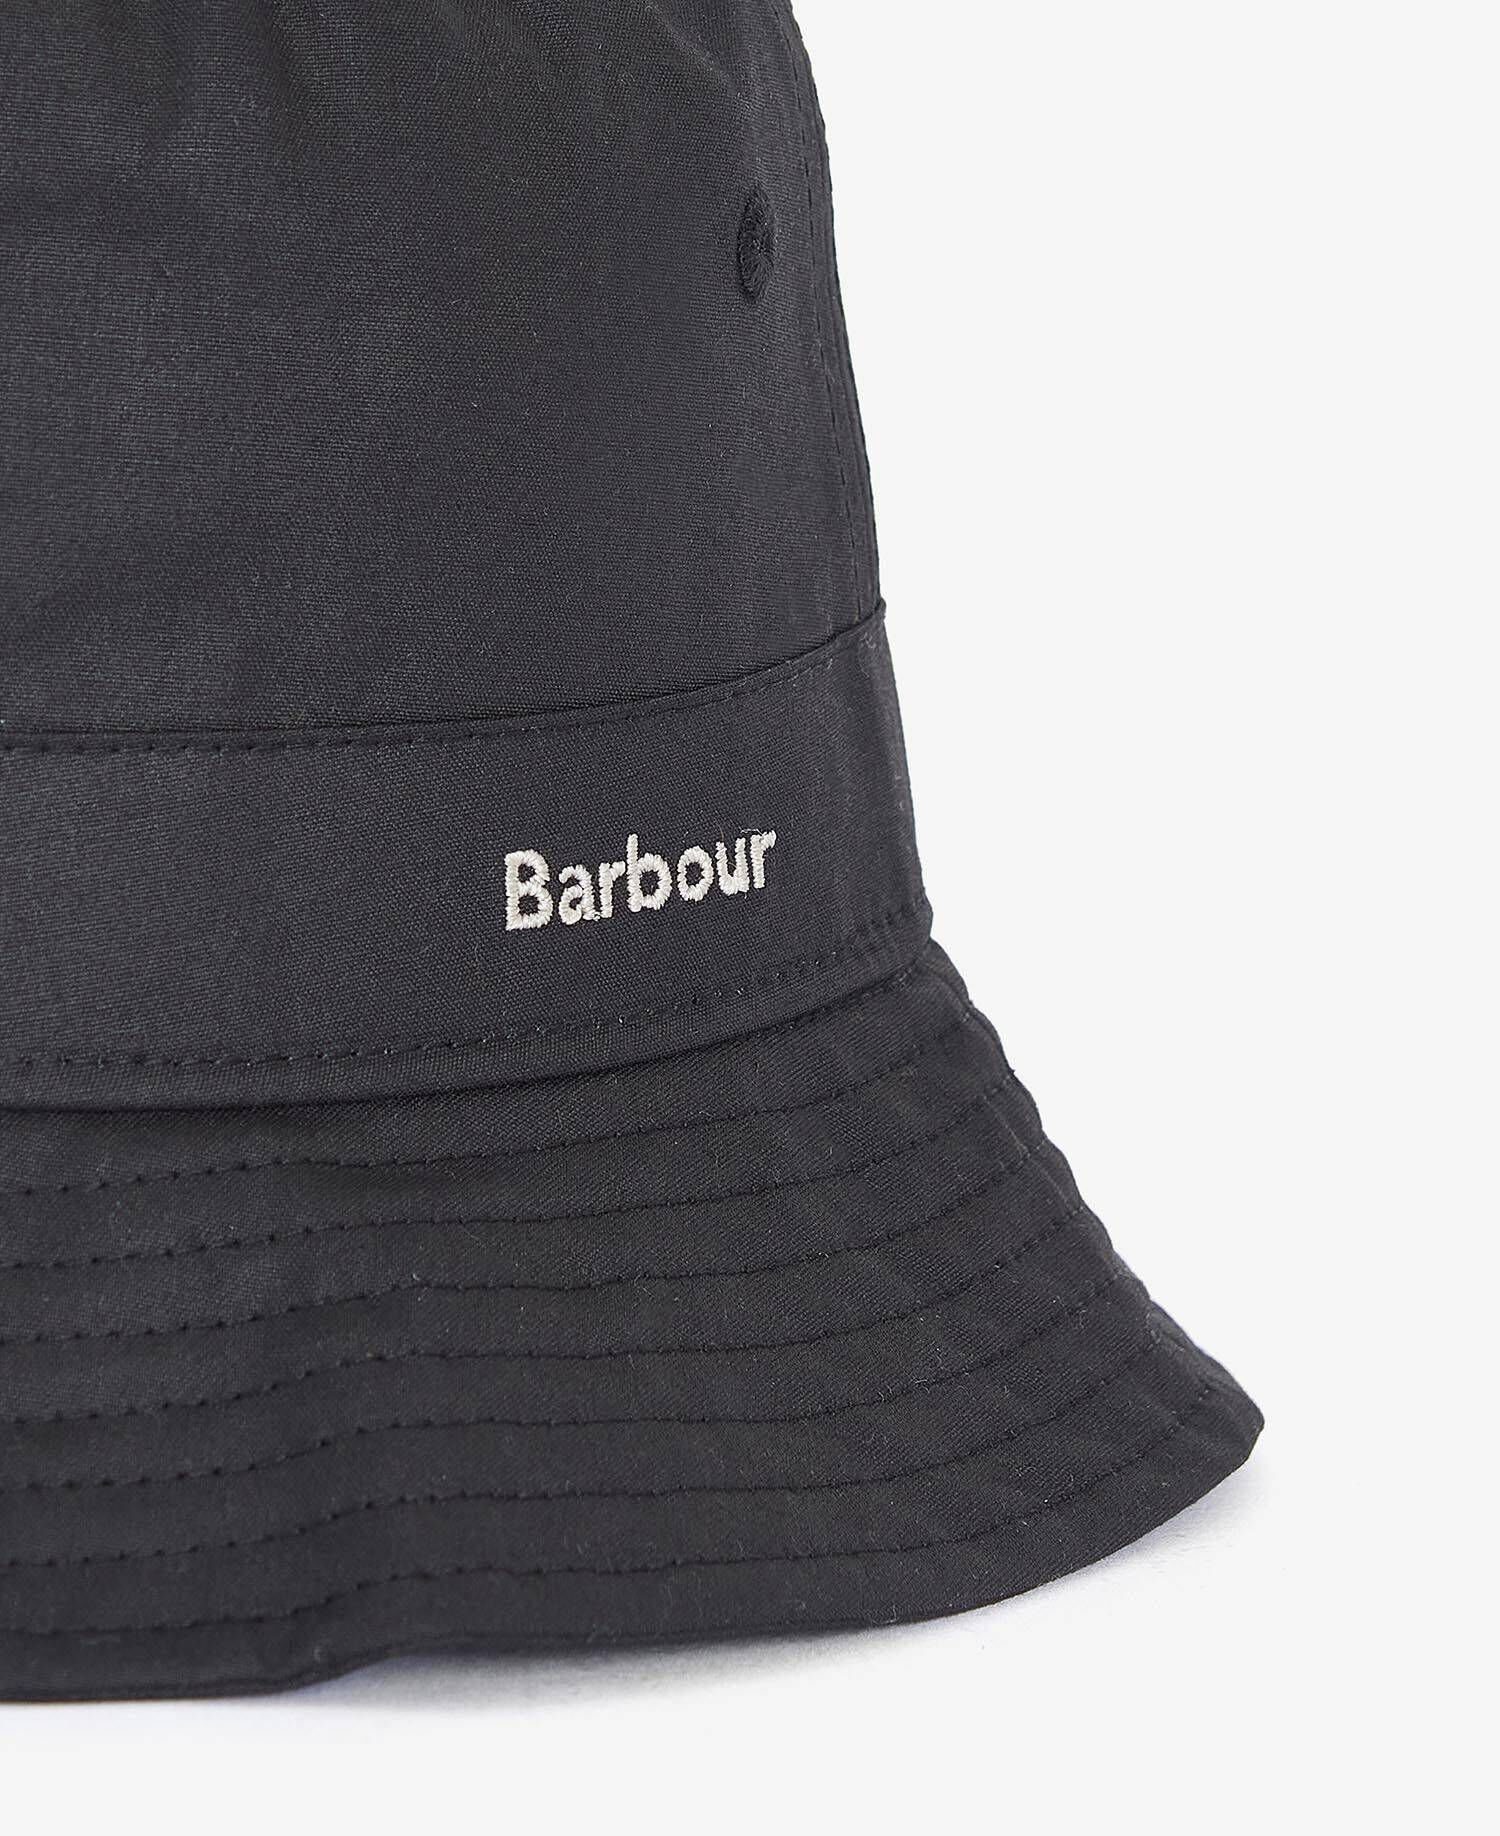 (15) Barbour WAX Sonnenhut Hut SPORTS HAT schwarz BELSAY